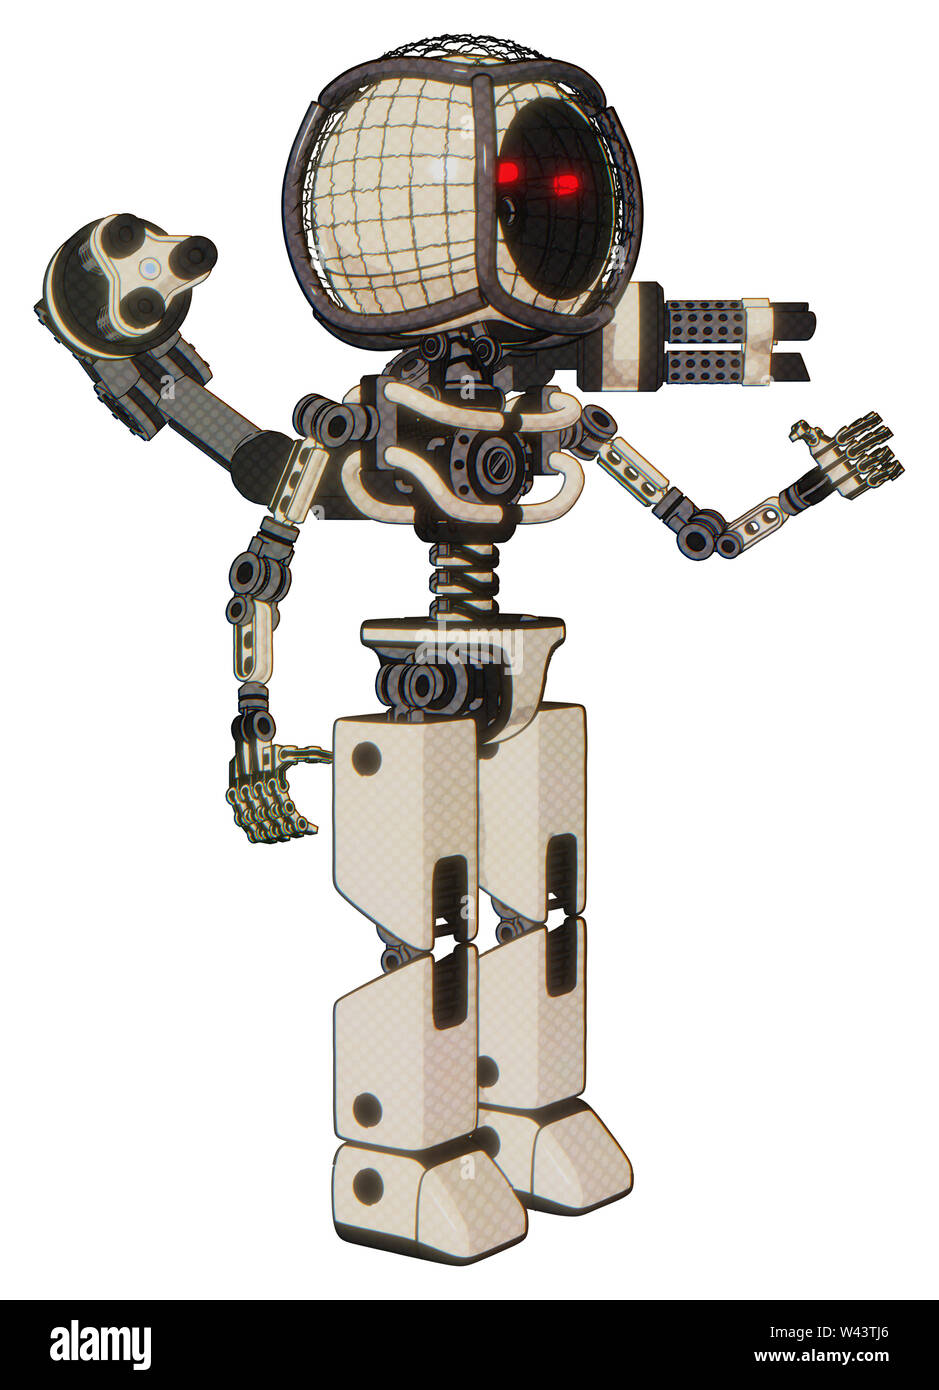 Robot contenente elementi: round filo spinato testa rotonda, luce exoshielding torace, minigun gruppo posteriore, no al torace placcatura, prototipo exoplate gambe. Foto Stock